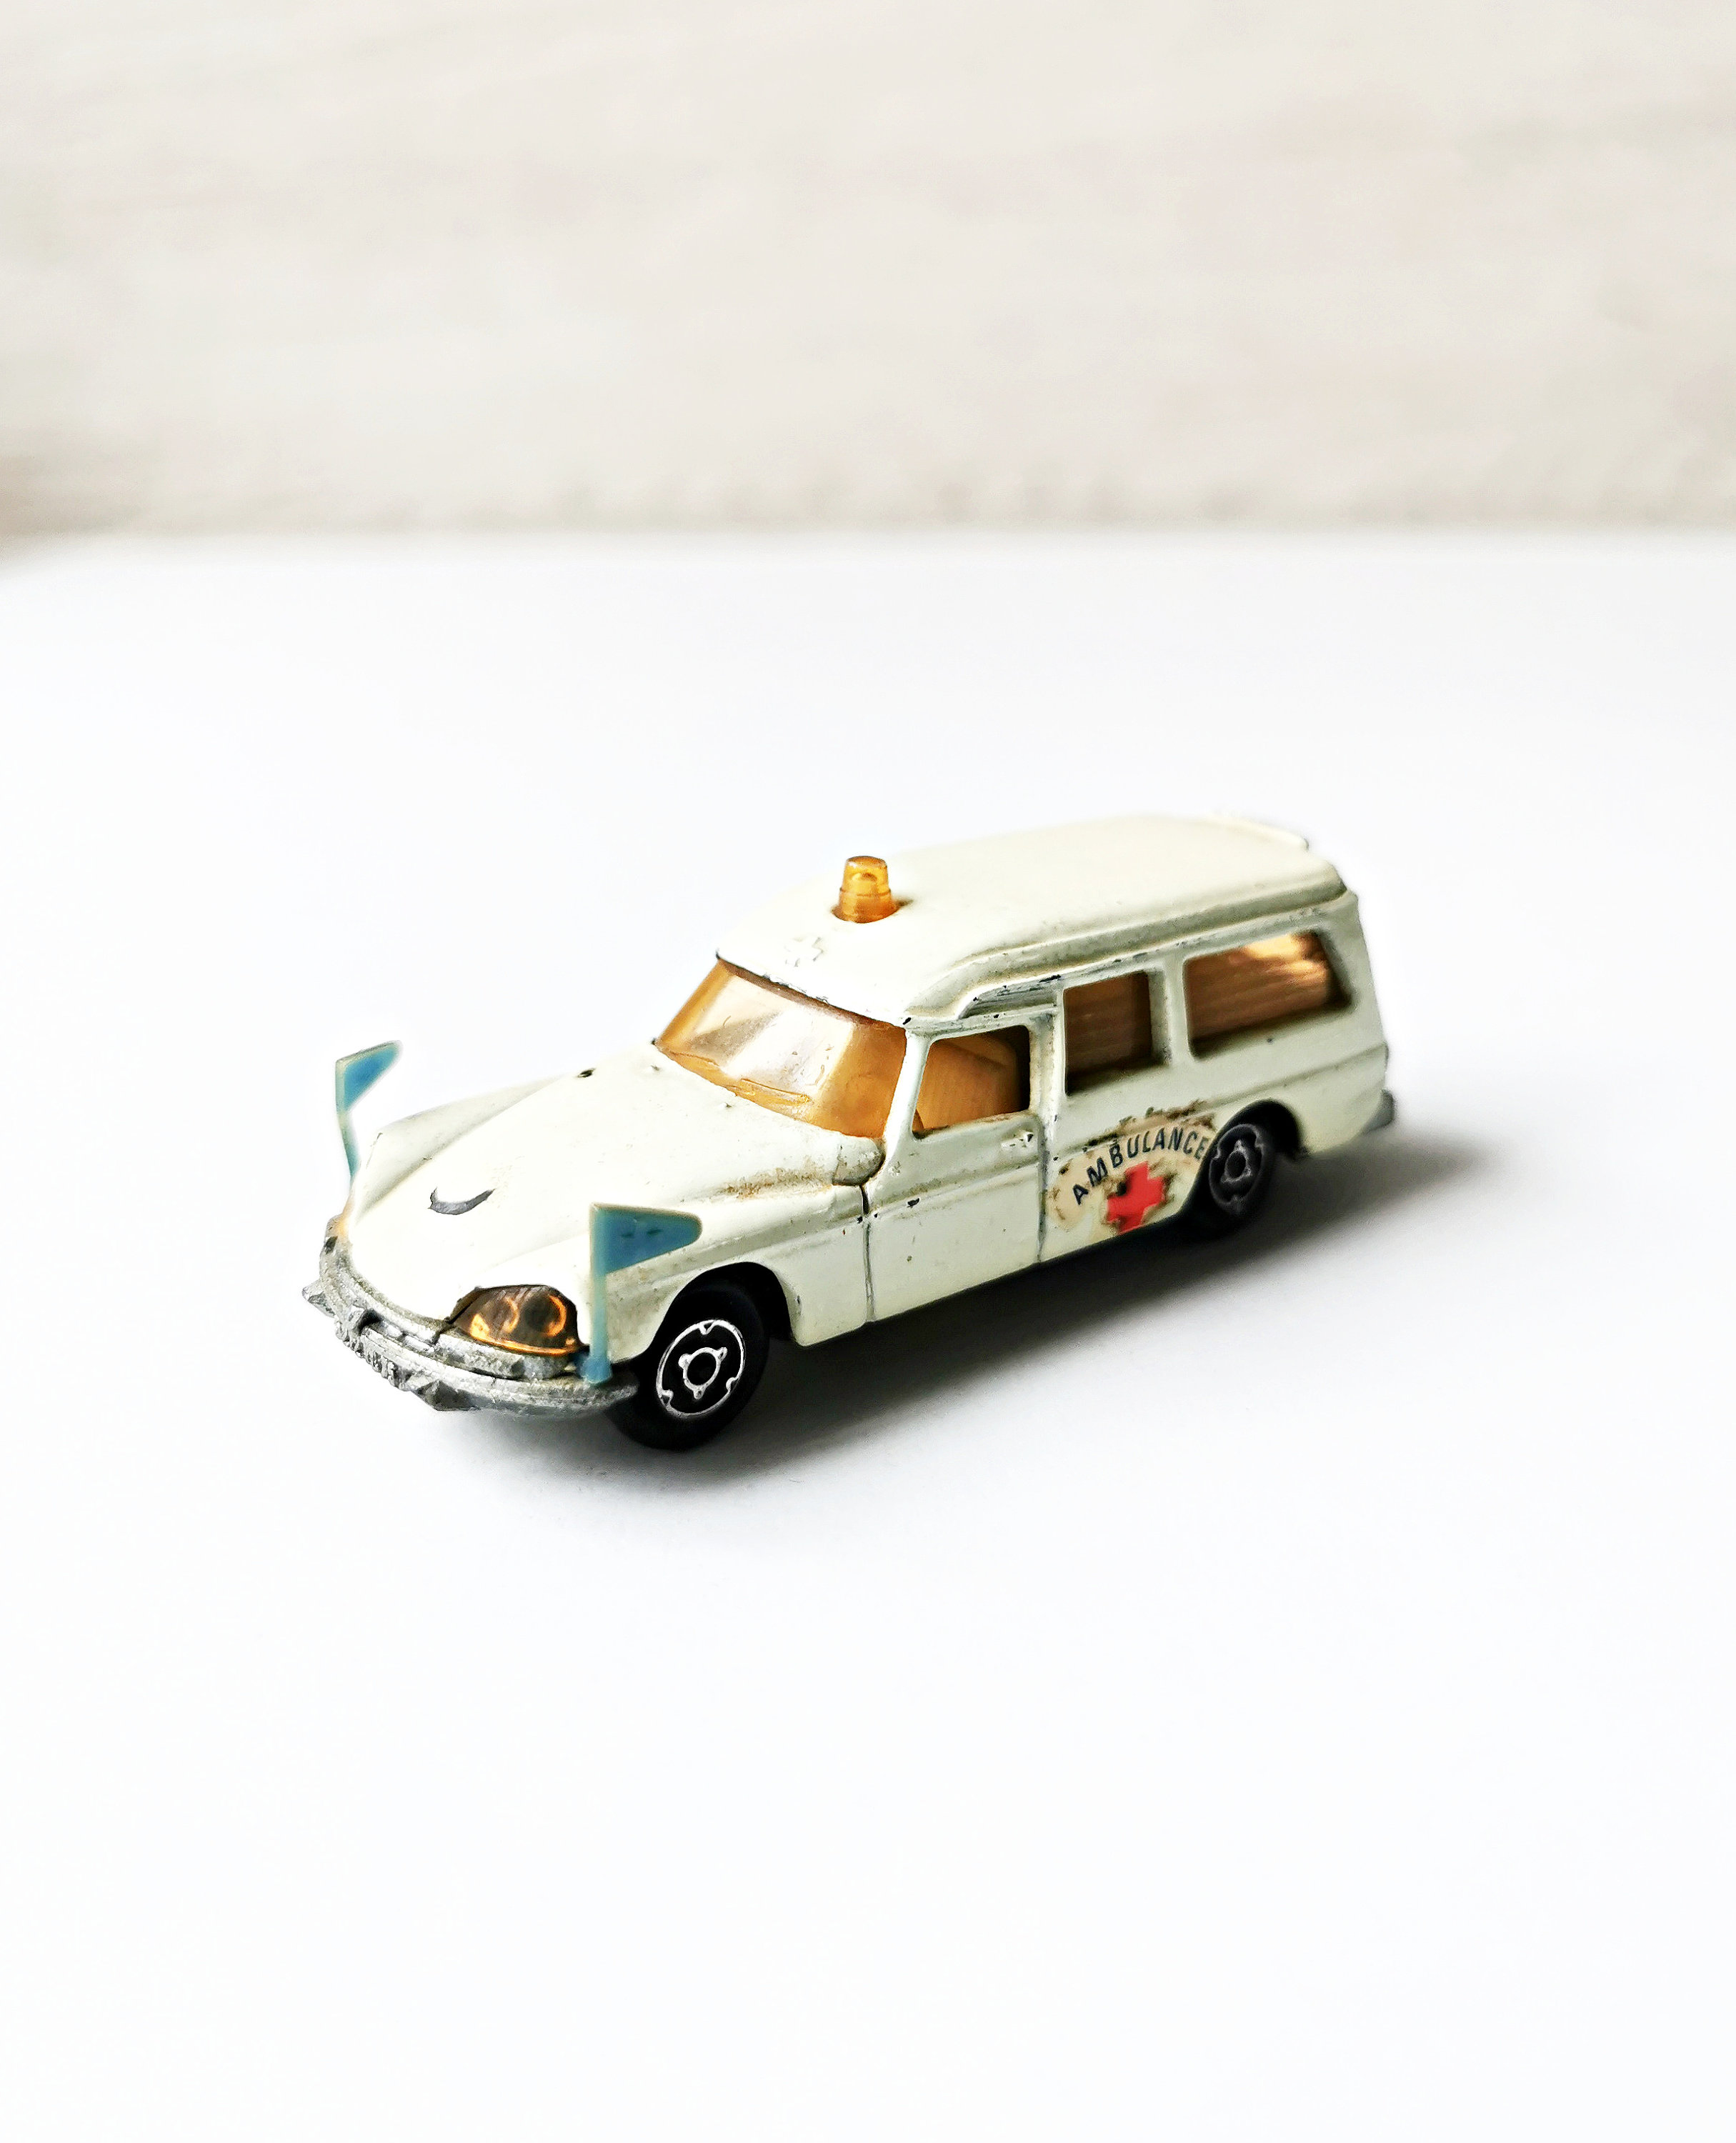 Majorette Suzuki Jimny Miniature Collectible Model -  Portugal